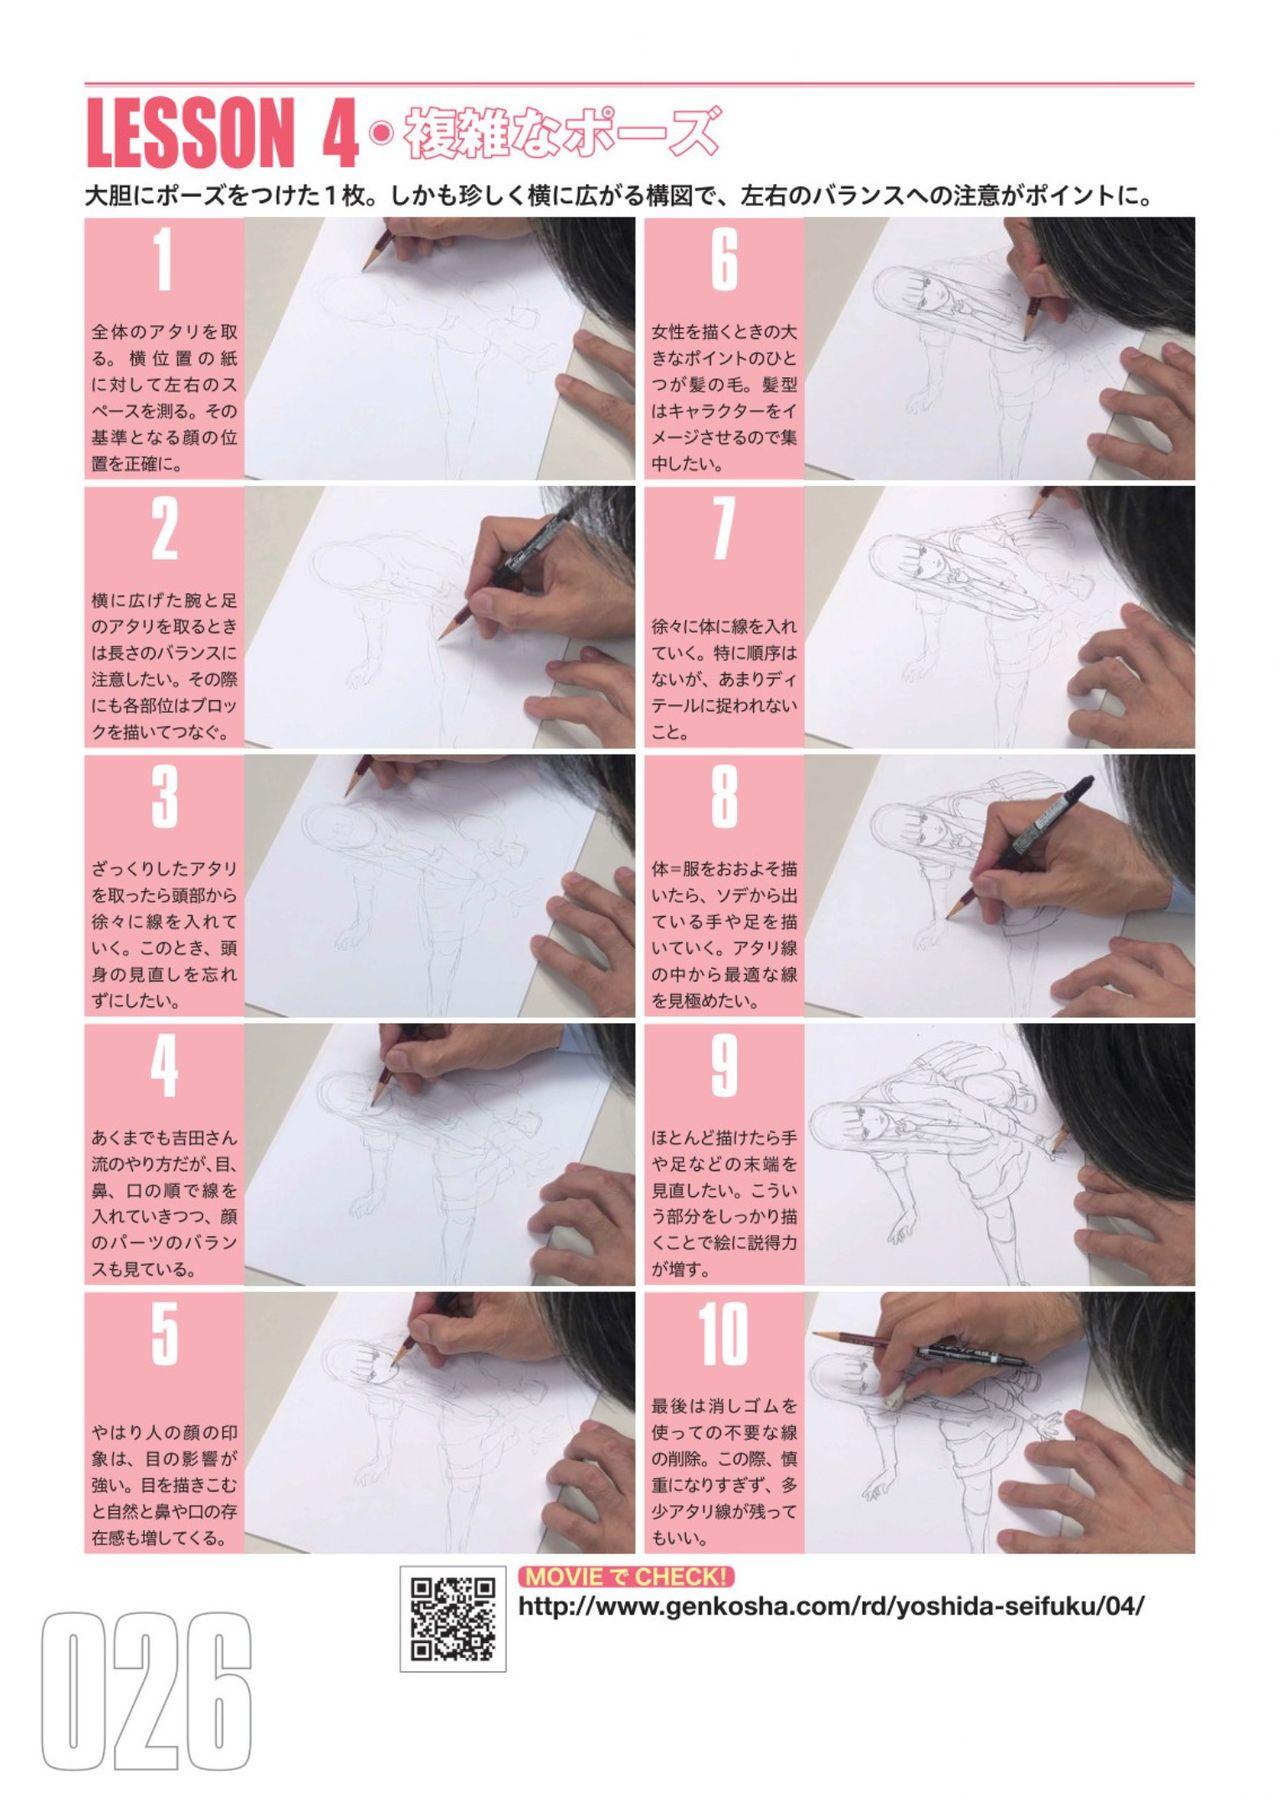 Toru Yoshida Tips for drawing women in 10 minutes 270 Uniforms 27